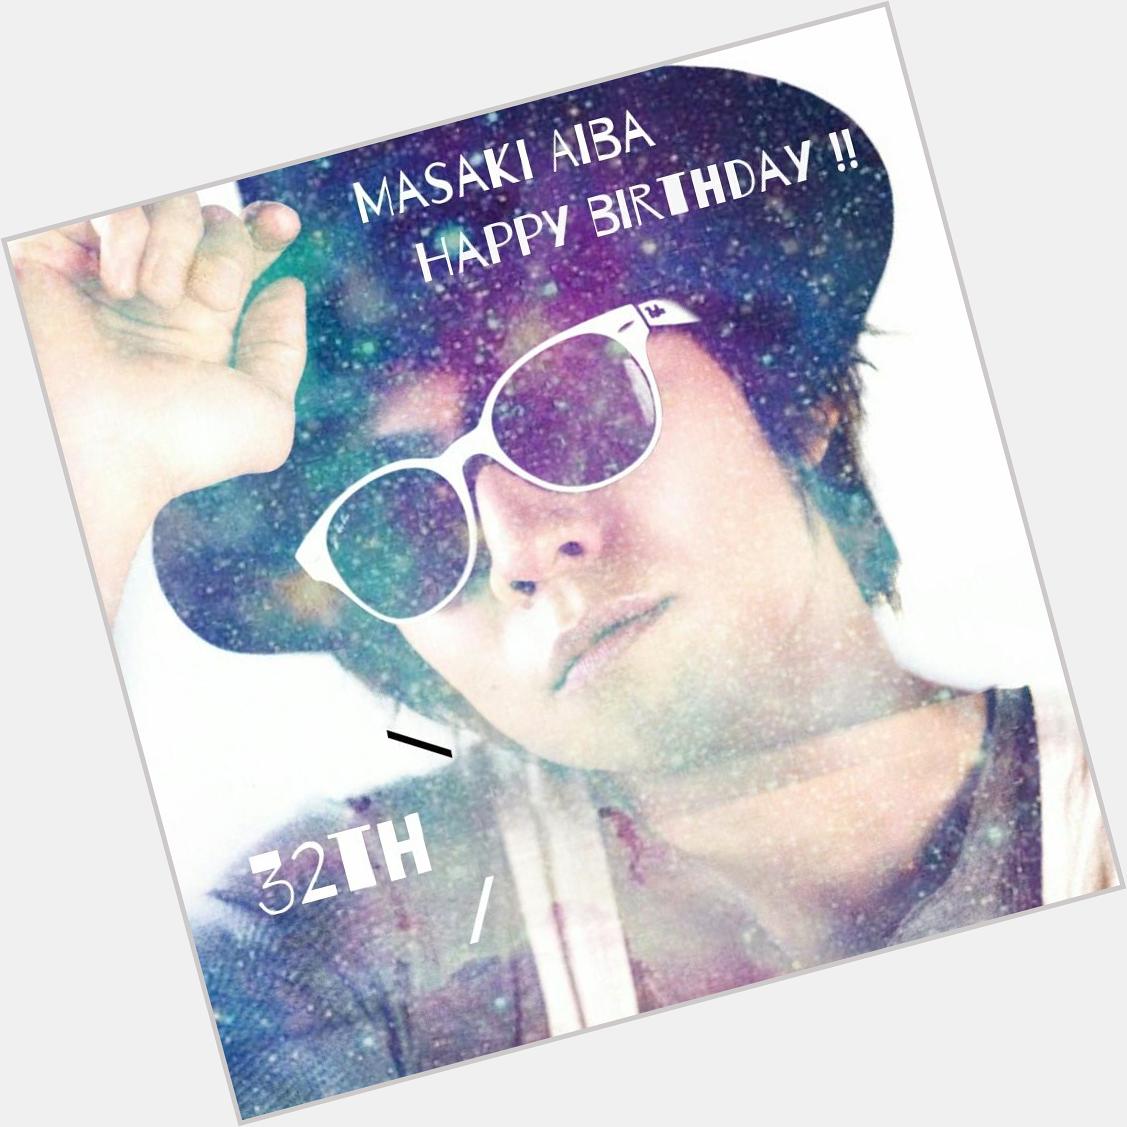 *
* Masaki Aiba 32th Happy Birthday !!!!!             *
*
* 